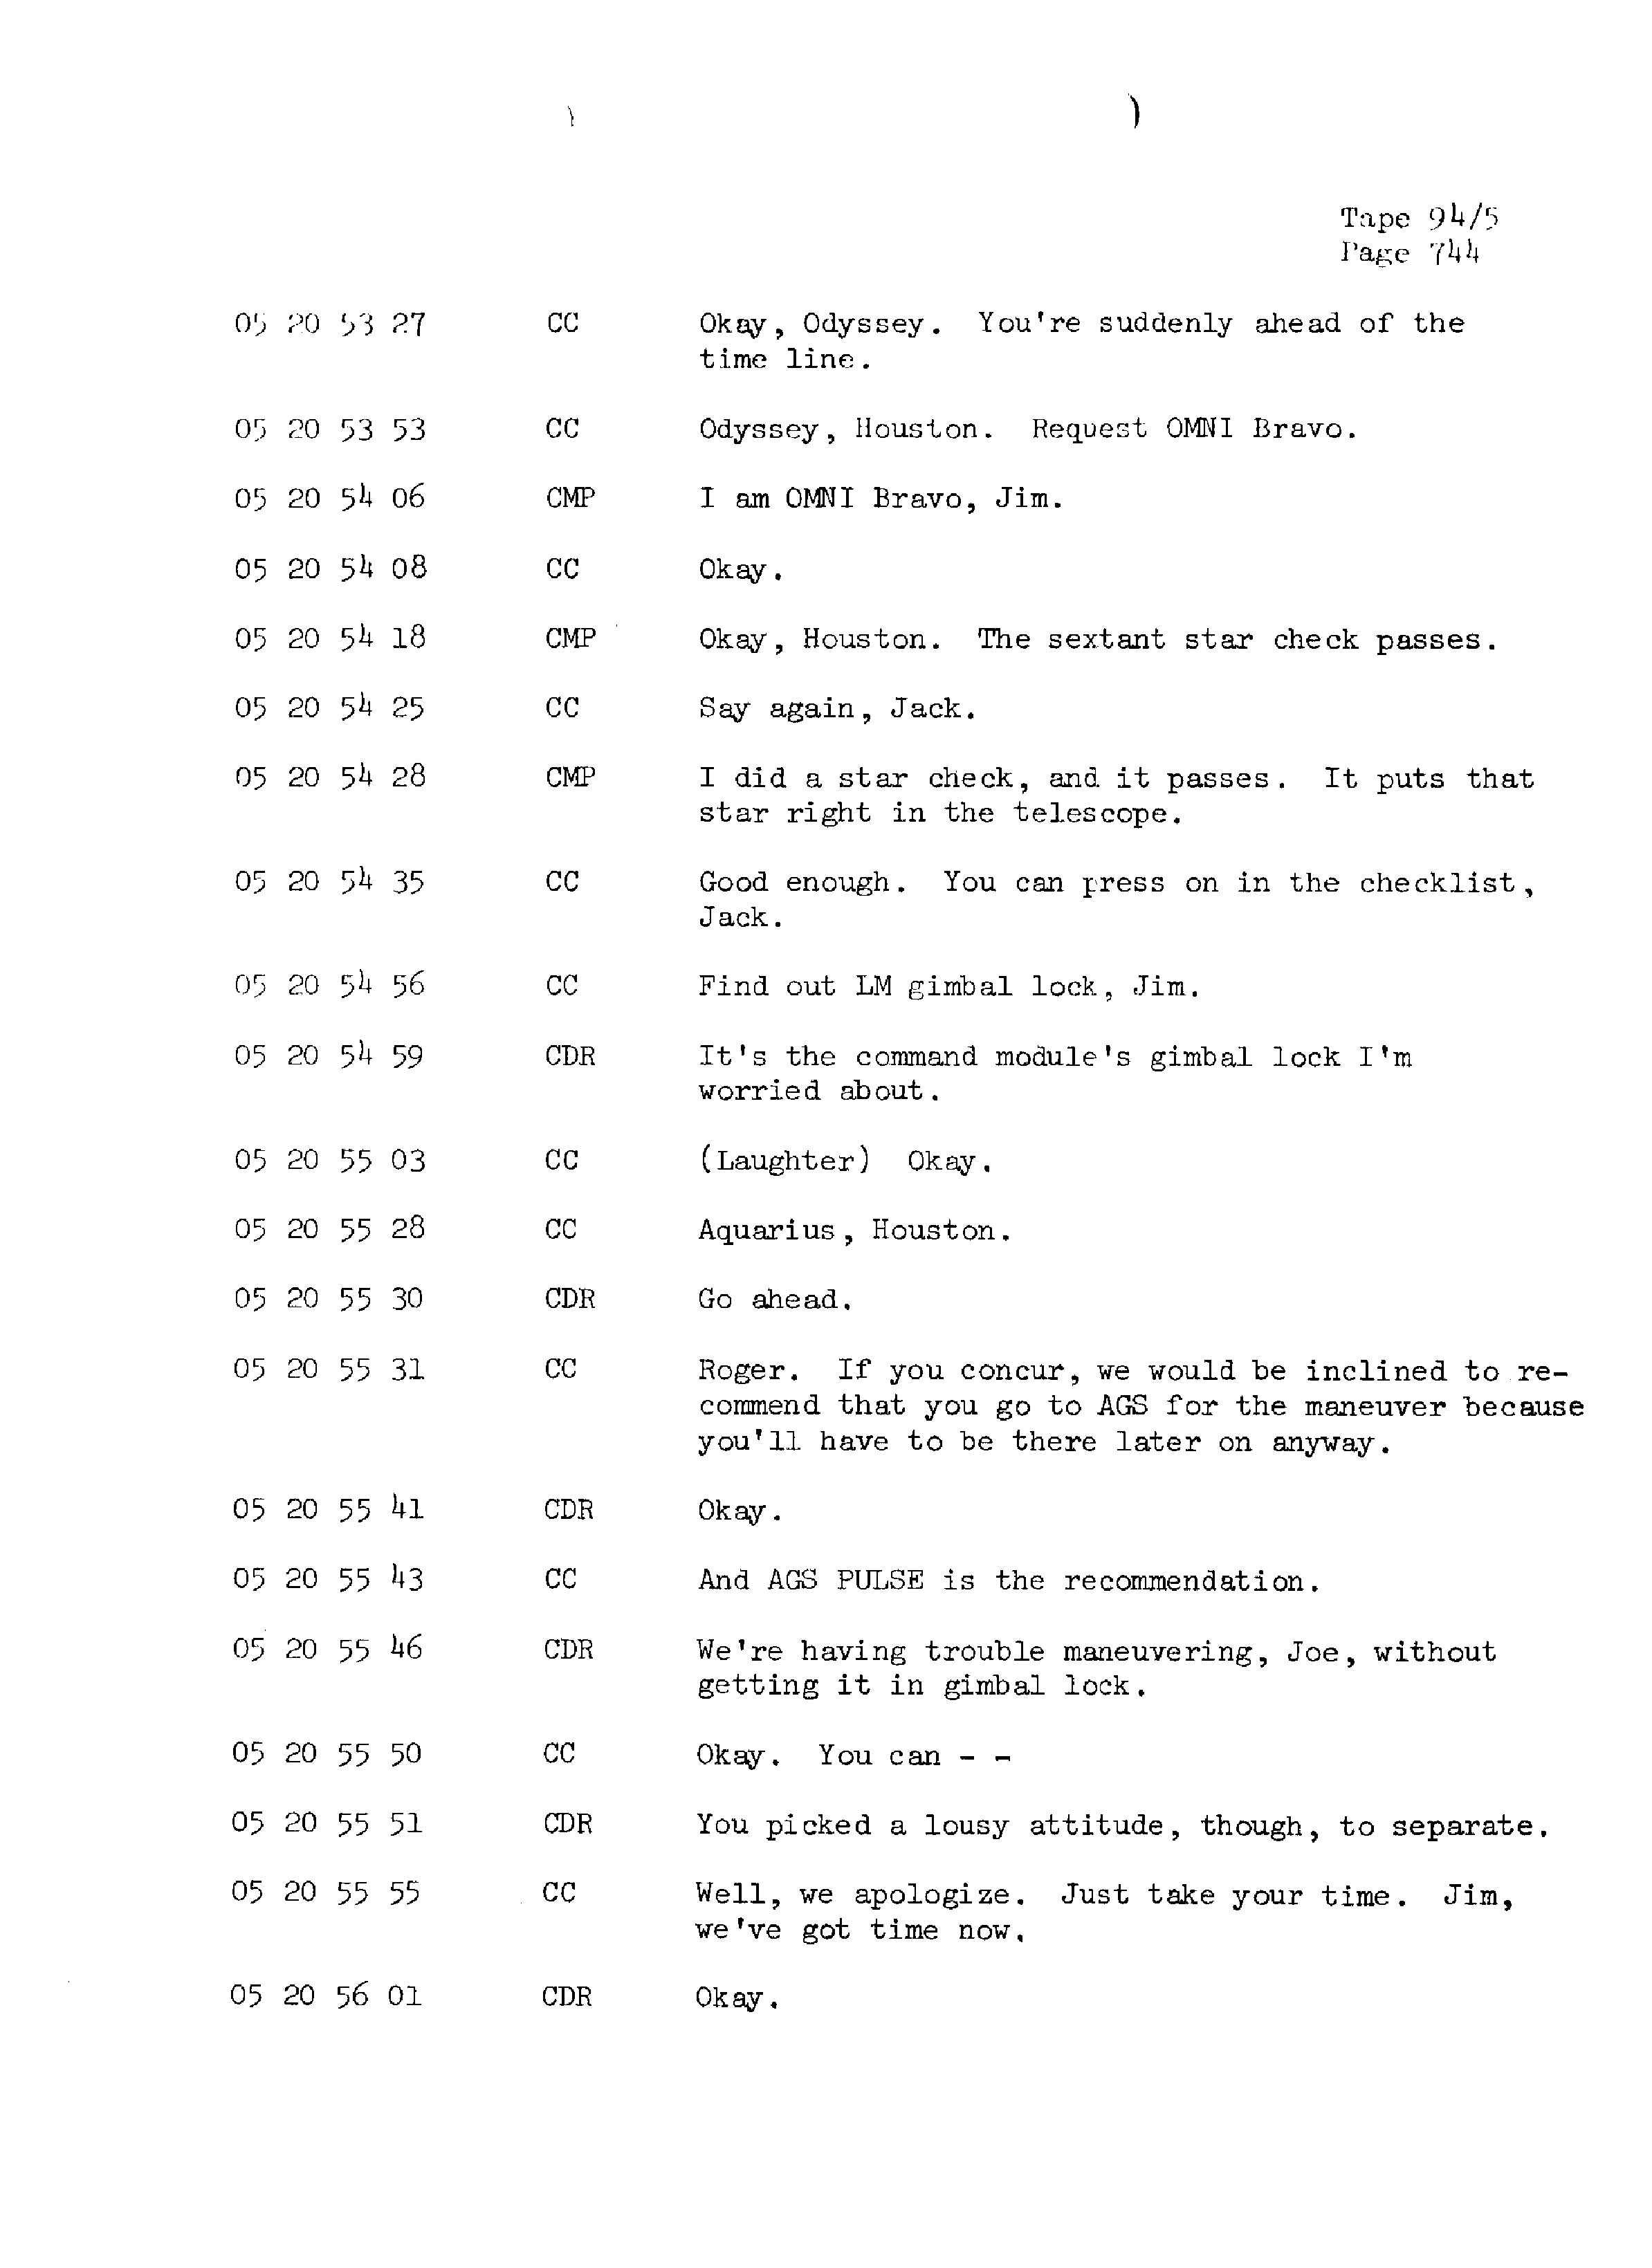 Page 751 of Apollo 13’s original transcript